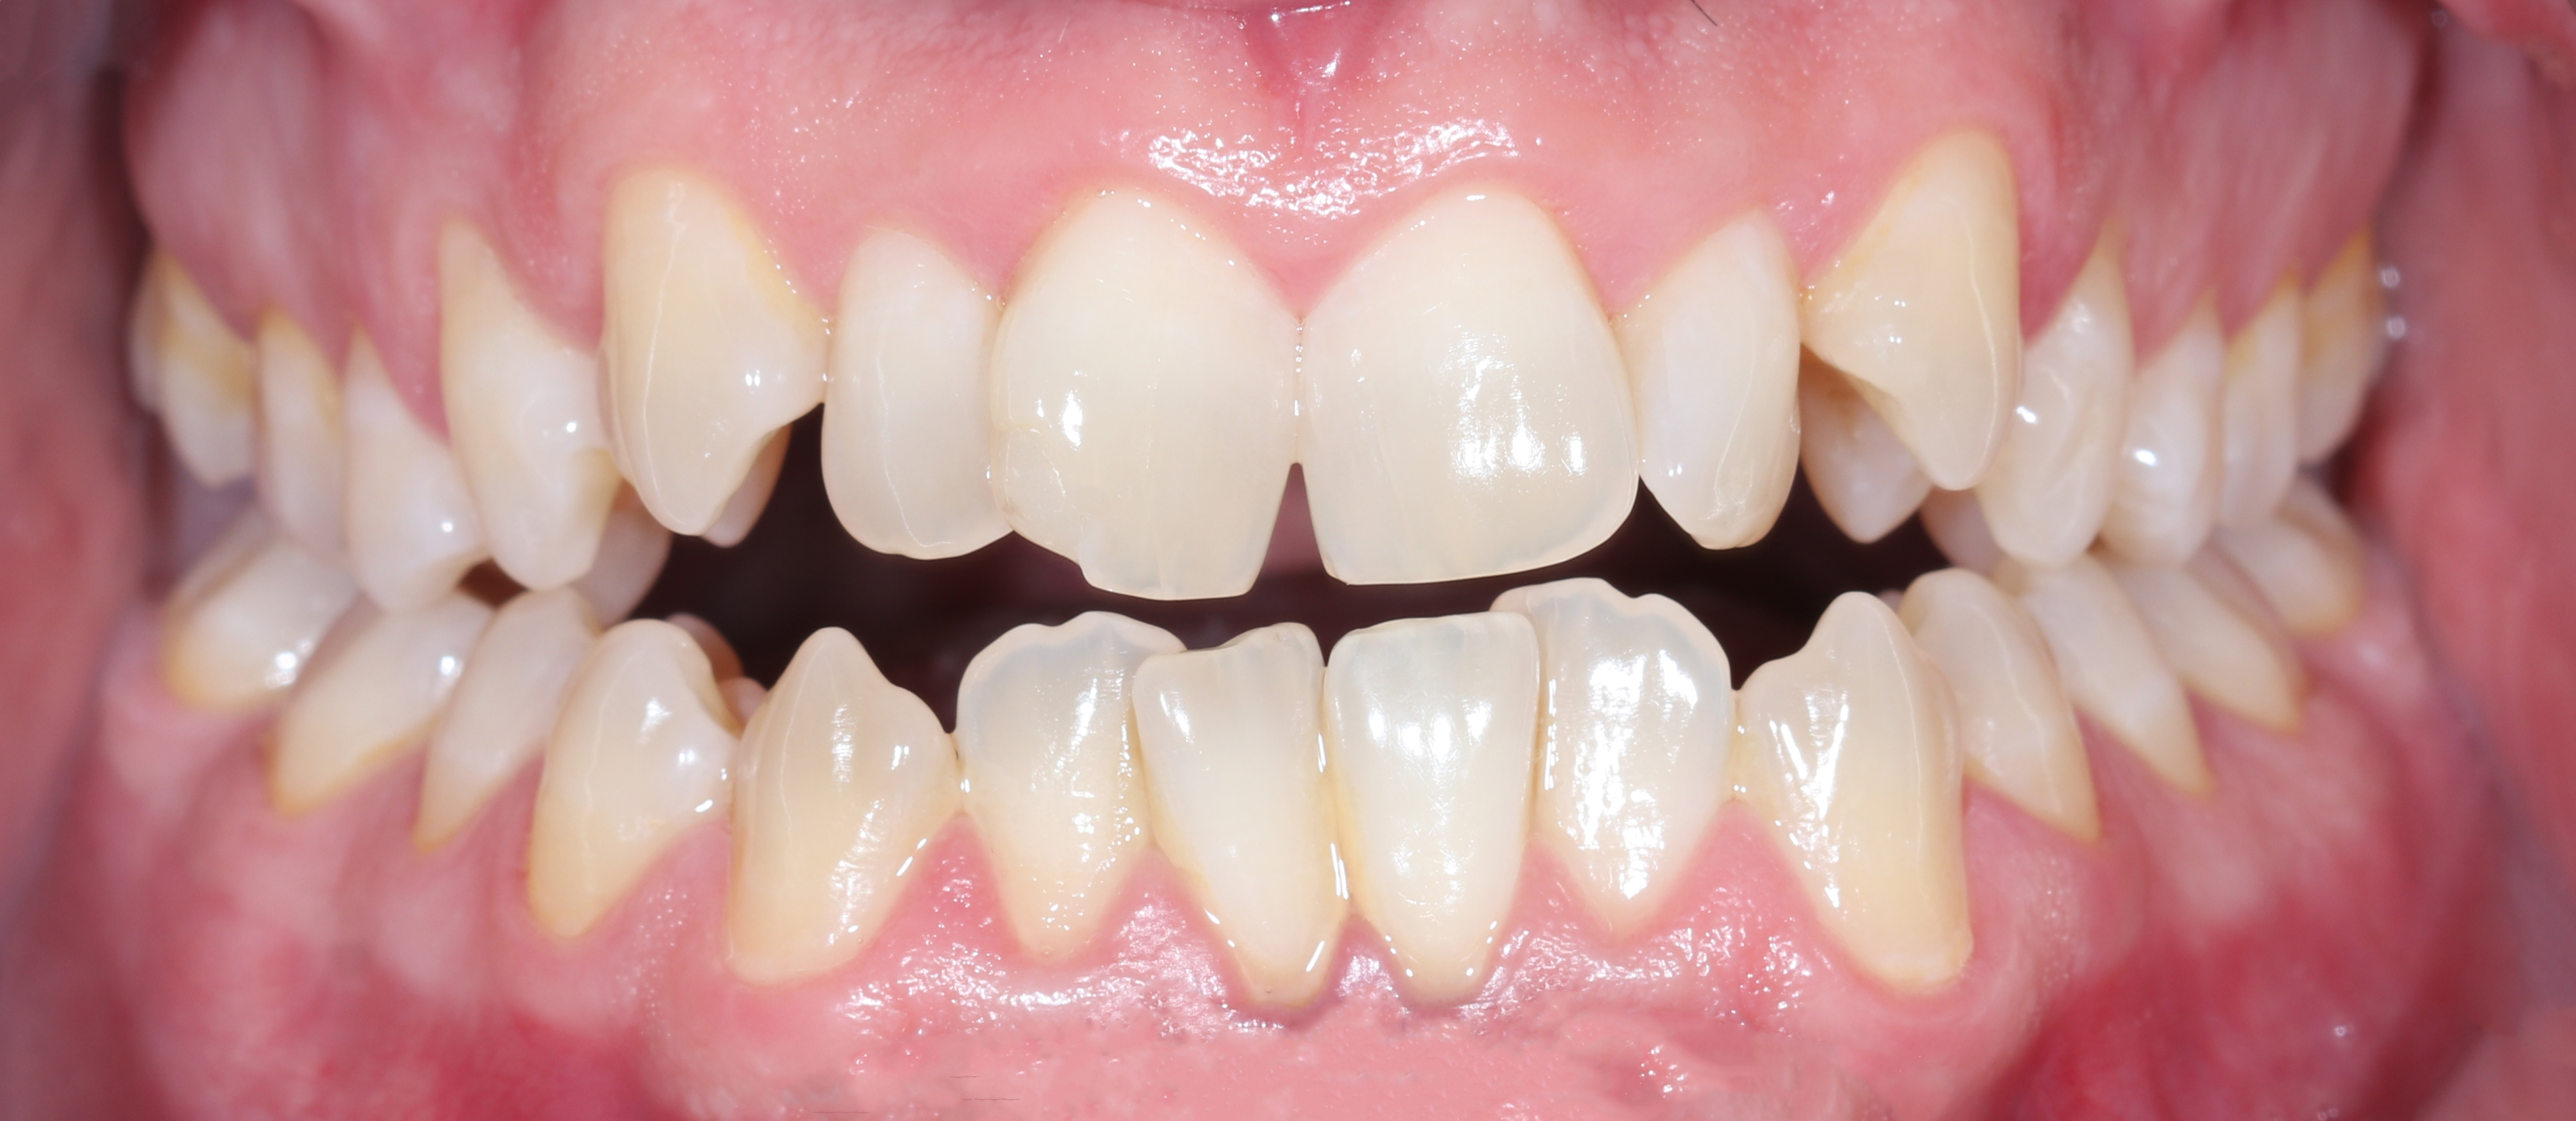 Αρχική κατάσταση - Πρόσθια άποψη με τα δόντια σε σύγκλειση